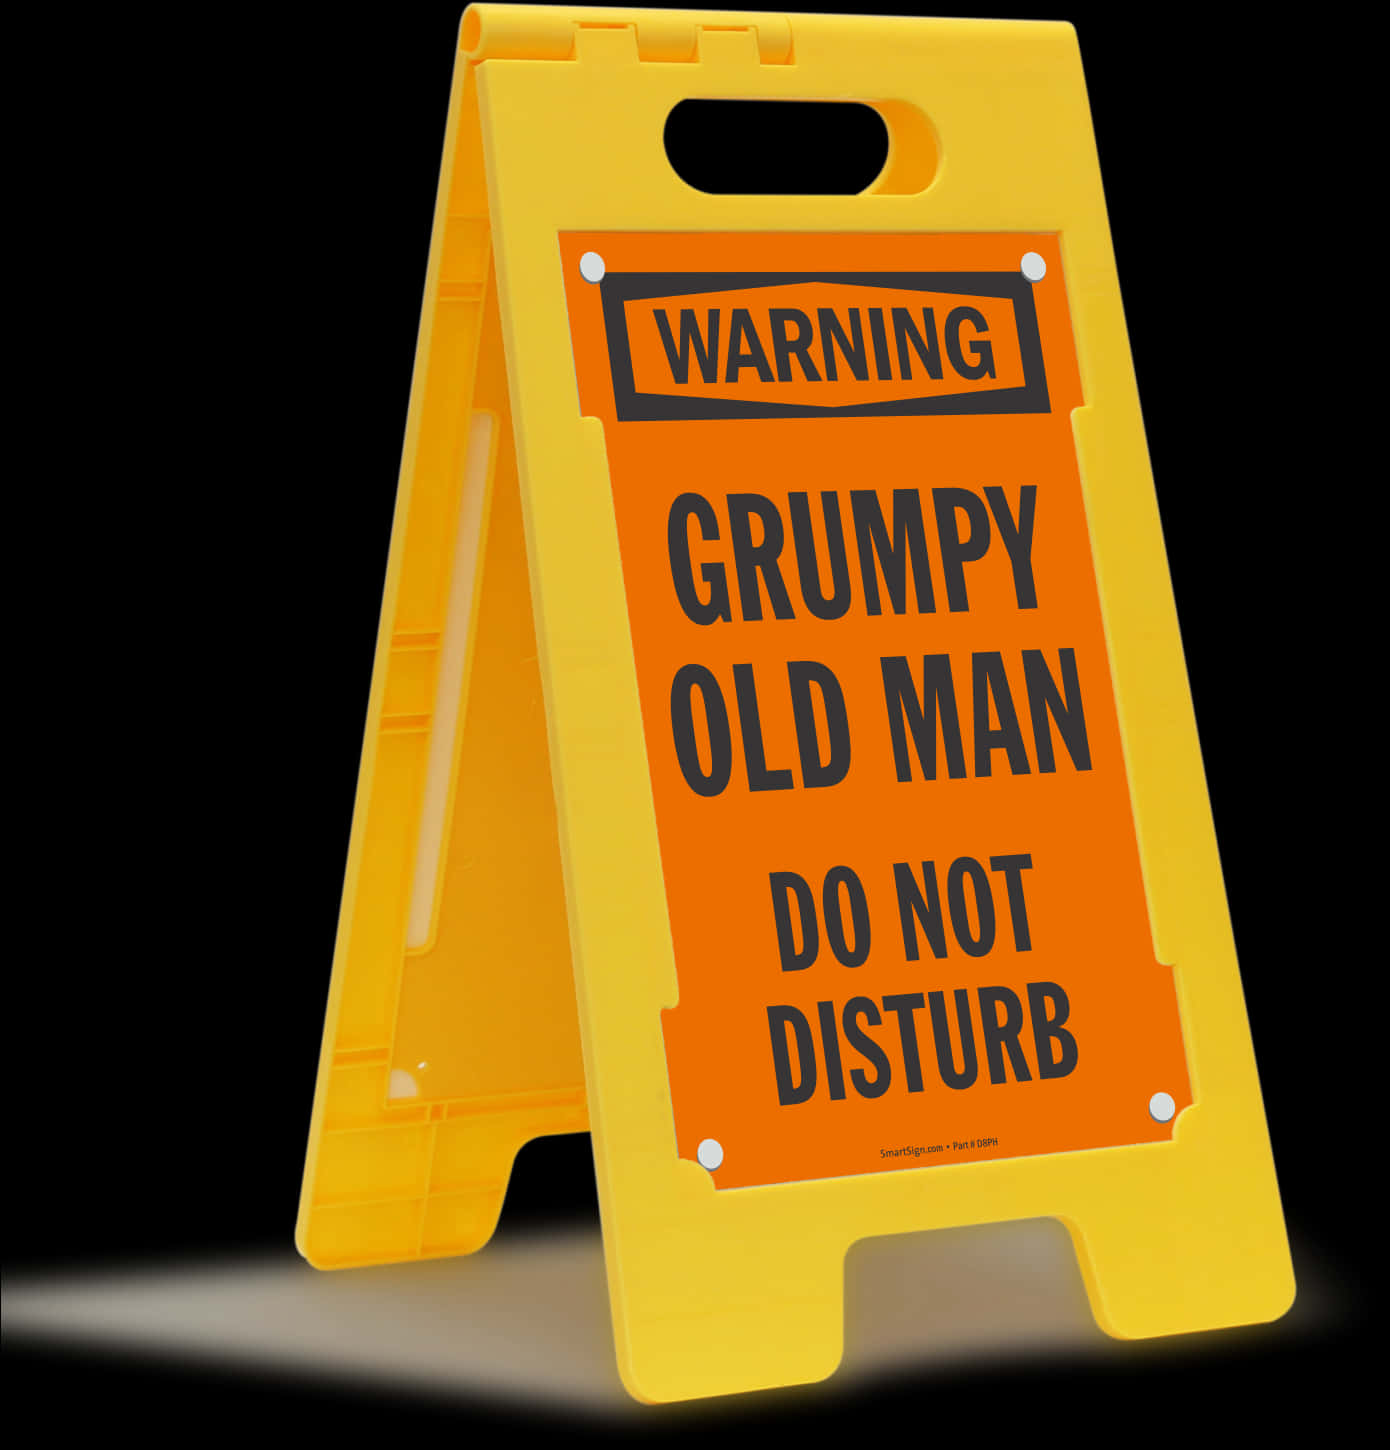 Grumpy Old Man Warning Sign PNG